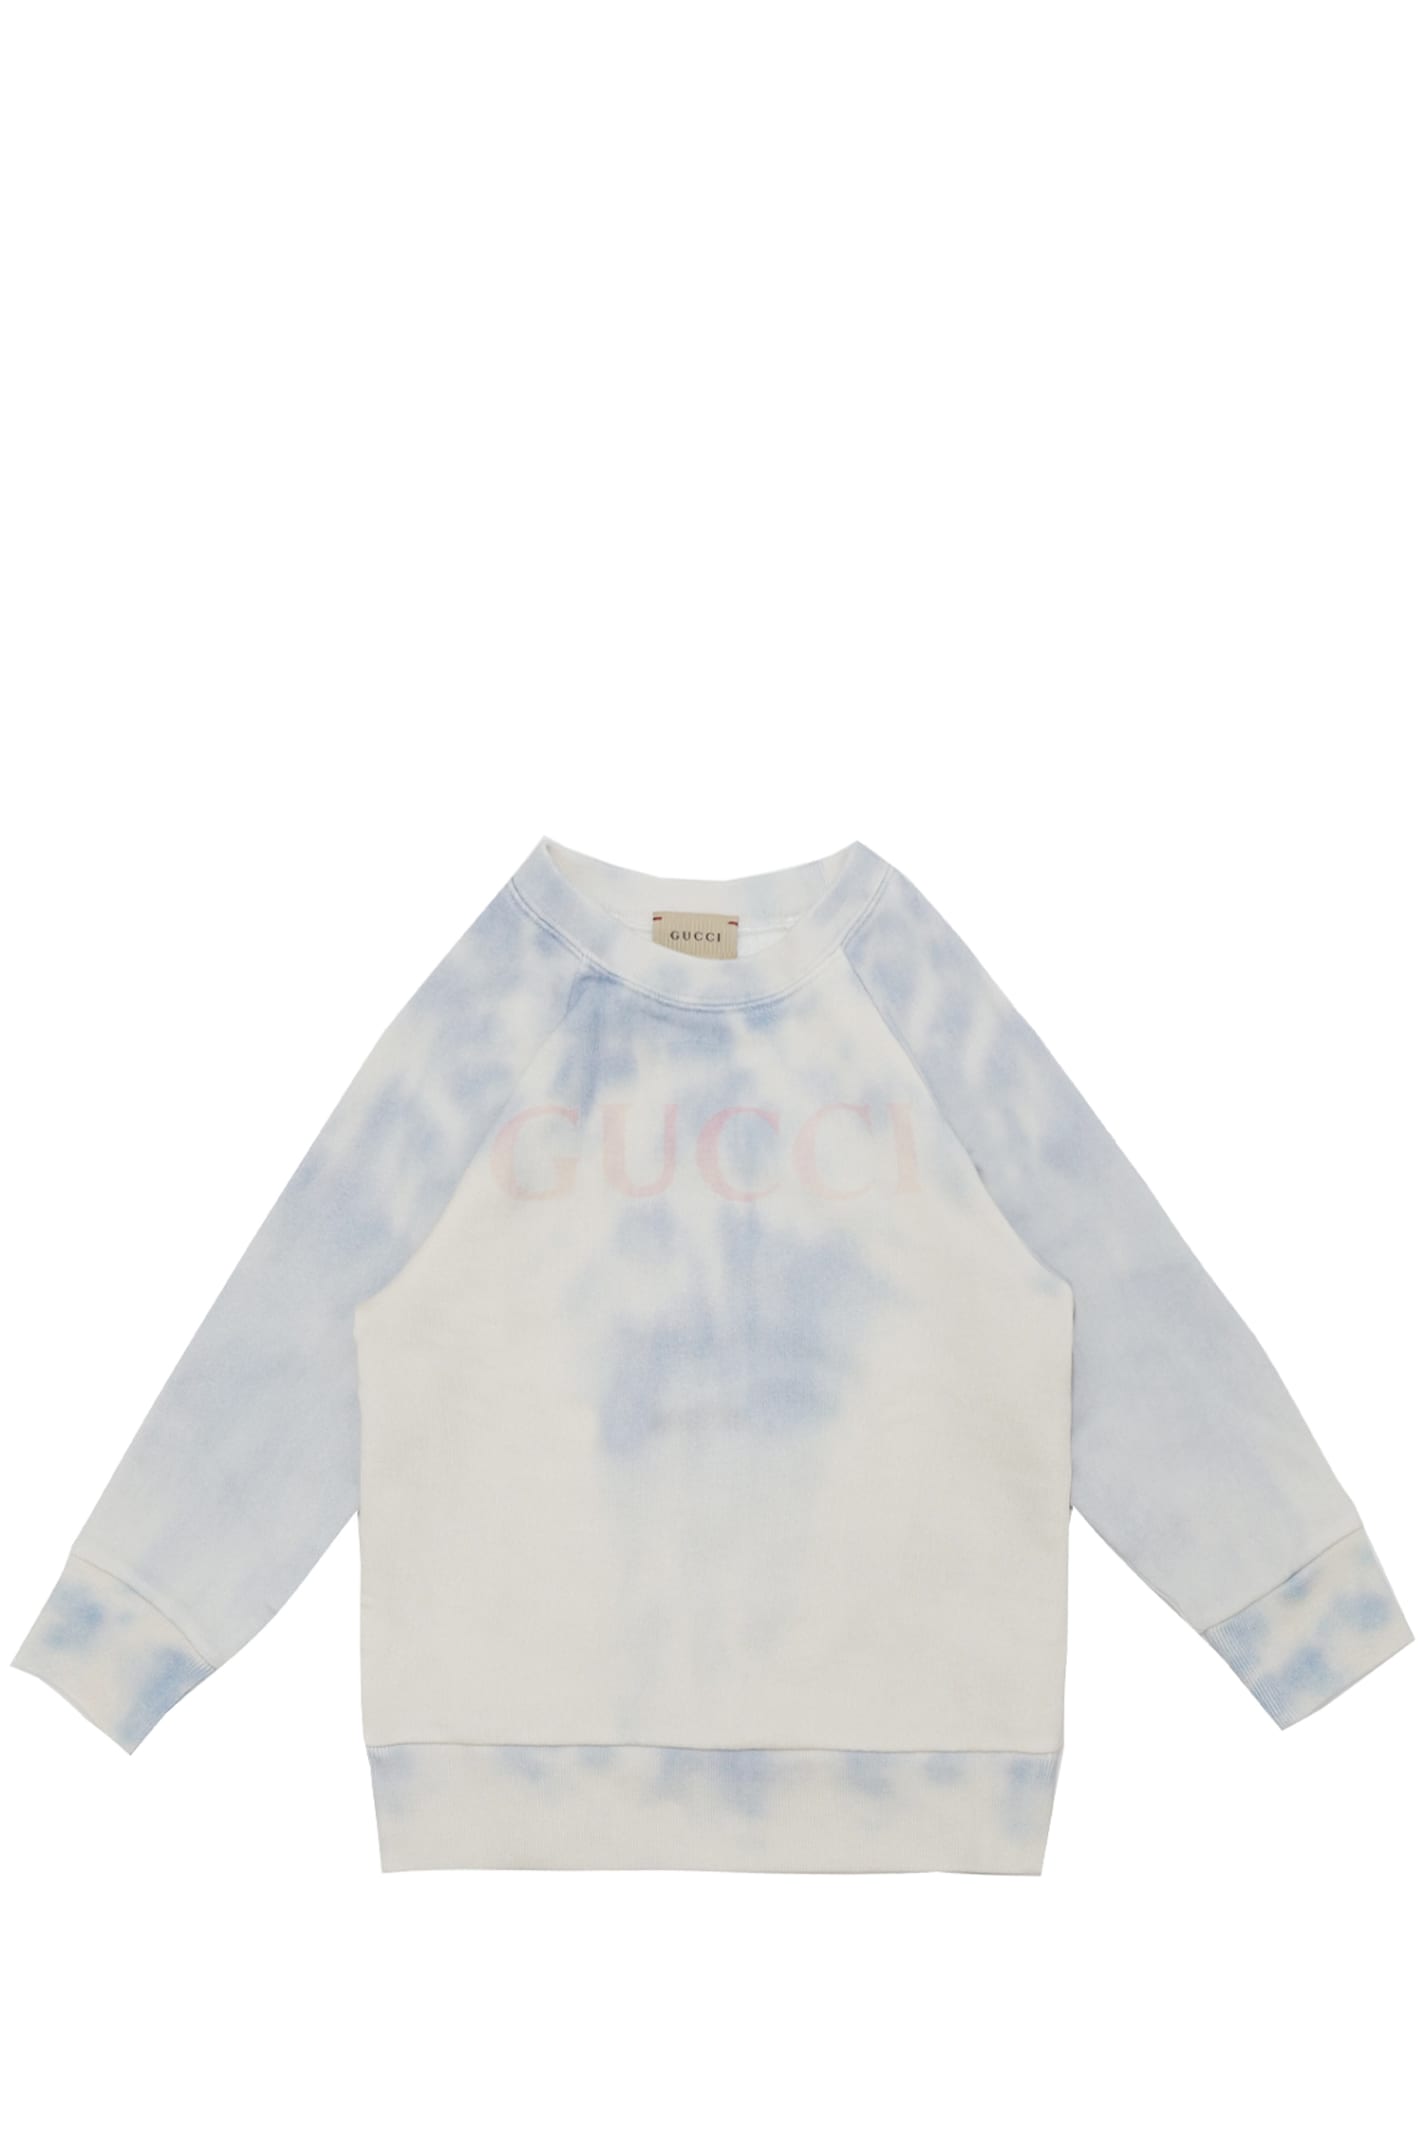 Gucci Kids' Sweatshirt In Multicolor